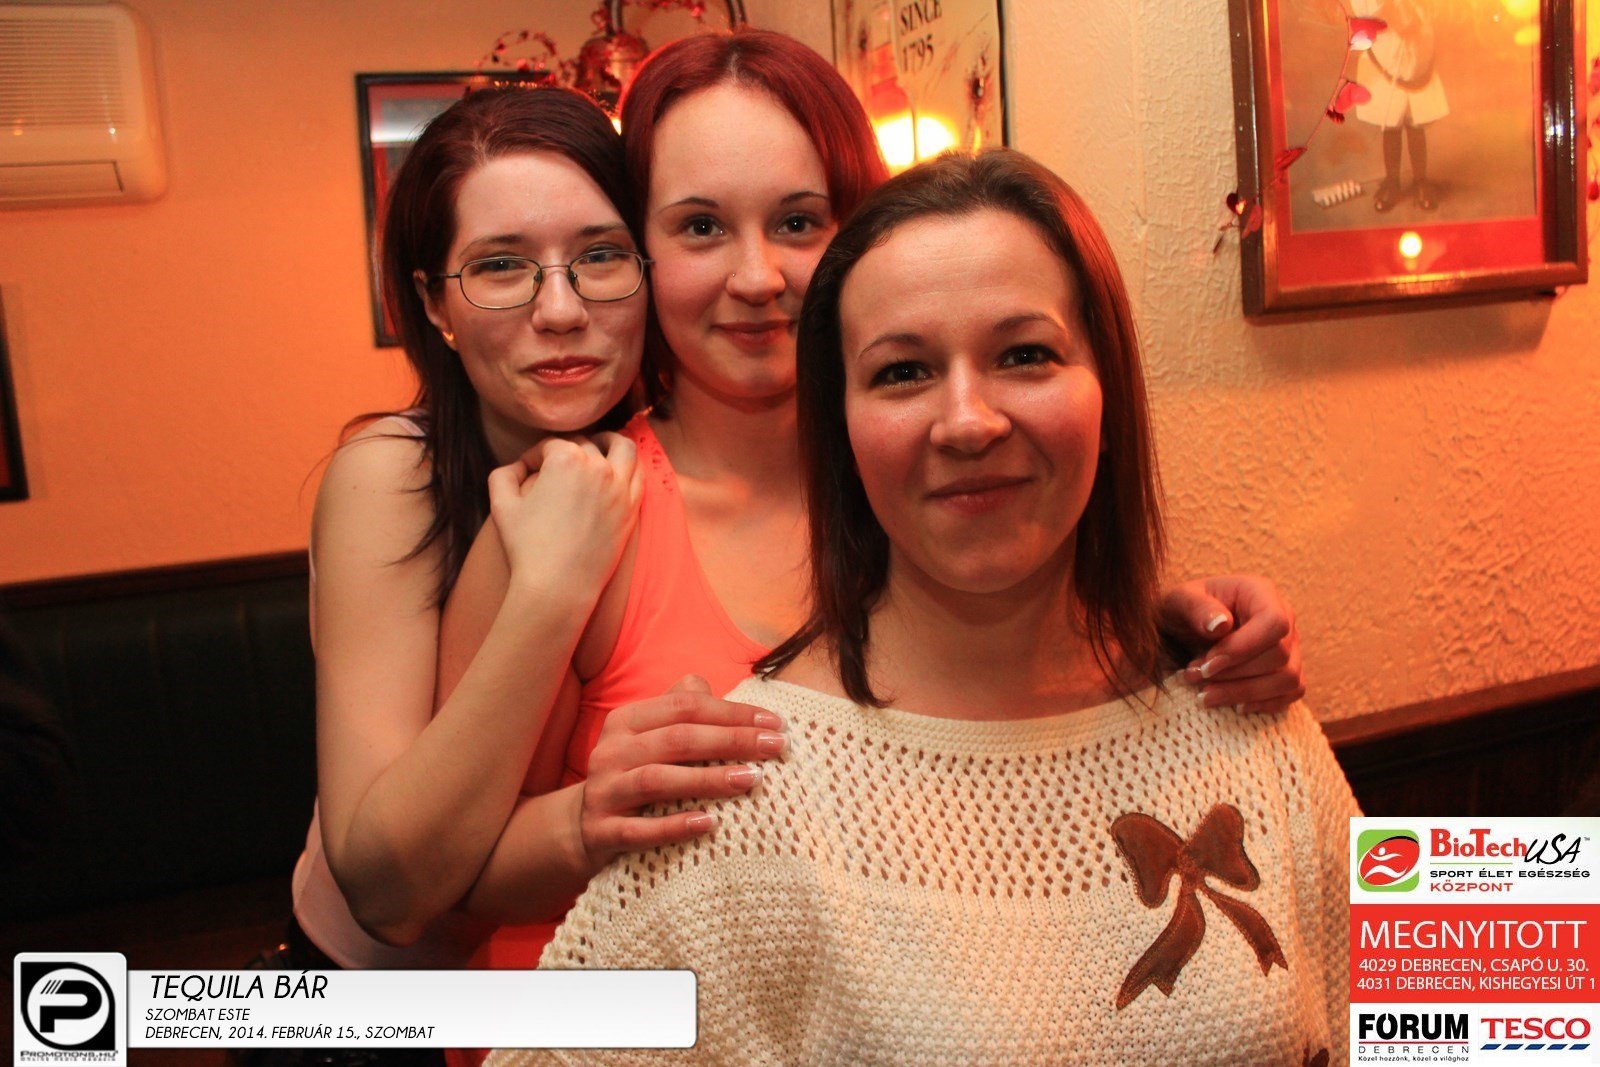 Debrecen, Tequila Bár- 2014. Február 15., szombat este